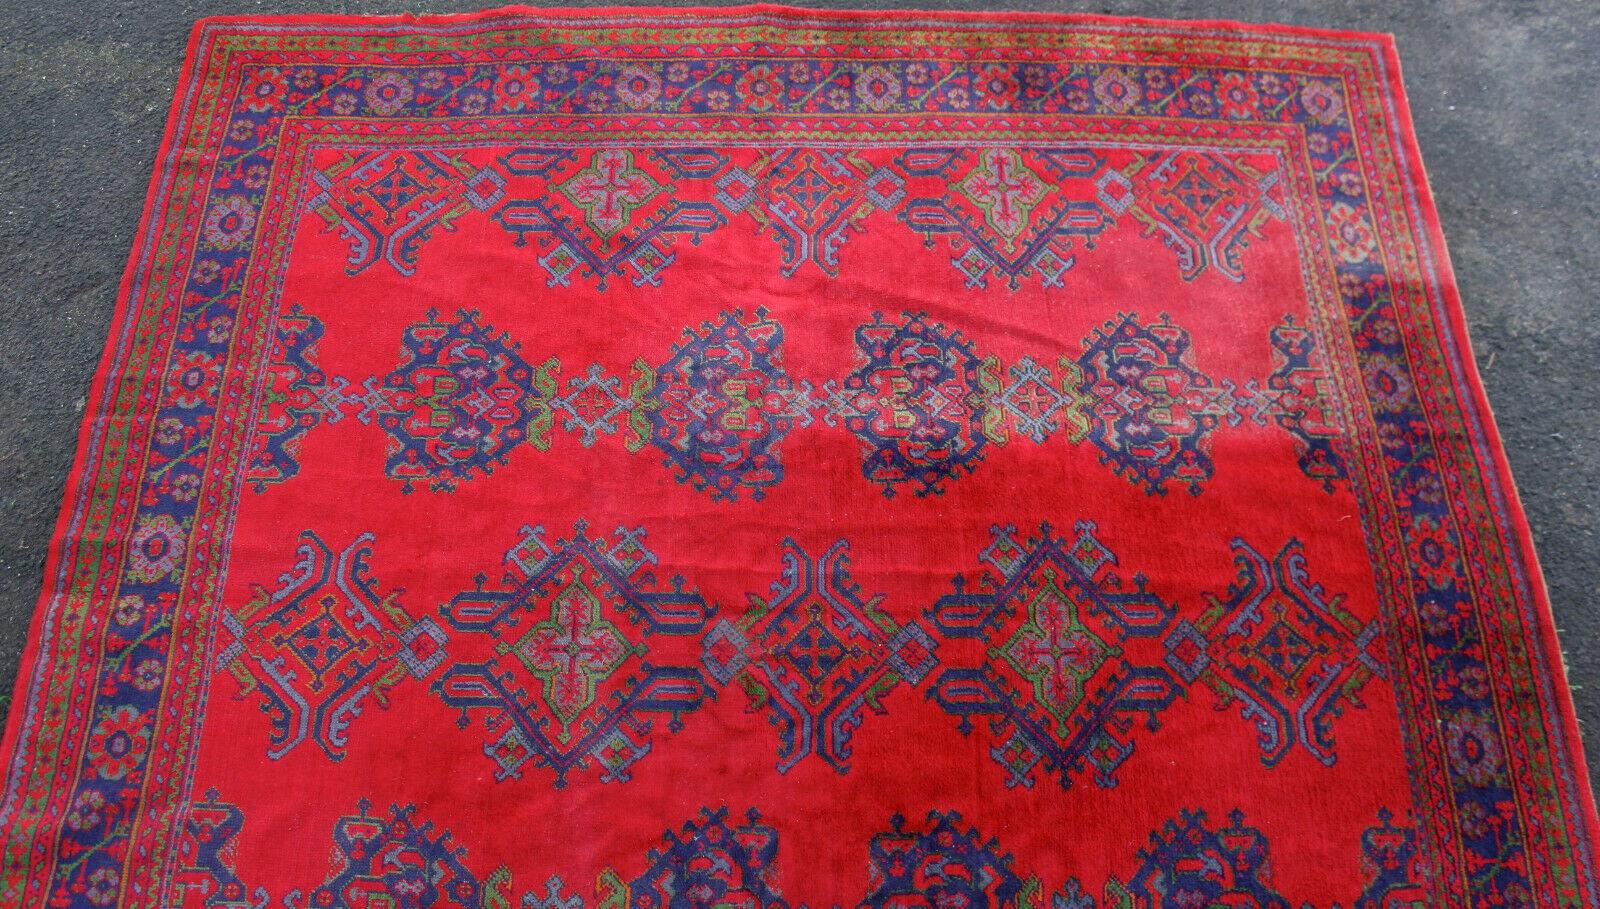 20th Century Turkish Oushak Rug Carpet Wool Turkish Ushak Red Green Blue For Sale